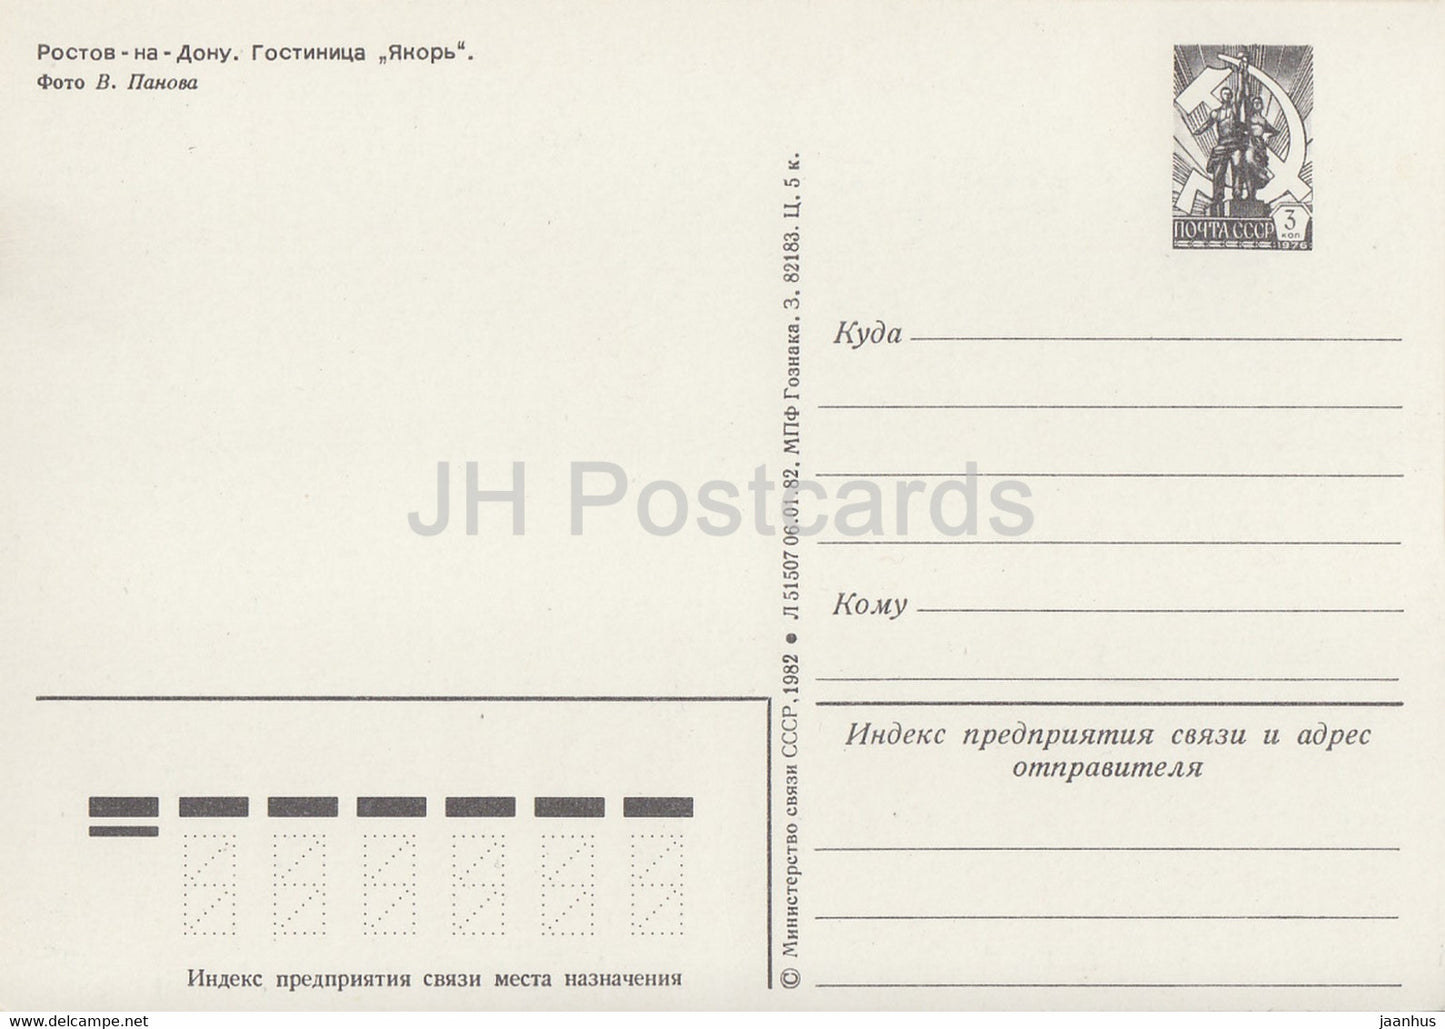 Rostov-sur-le-Don - hôtel Yakor (Anchor) - entier postal - 1982 - Russie URSS - inutilisé